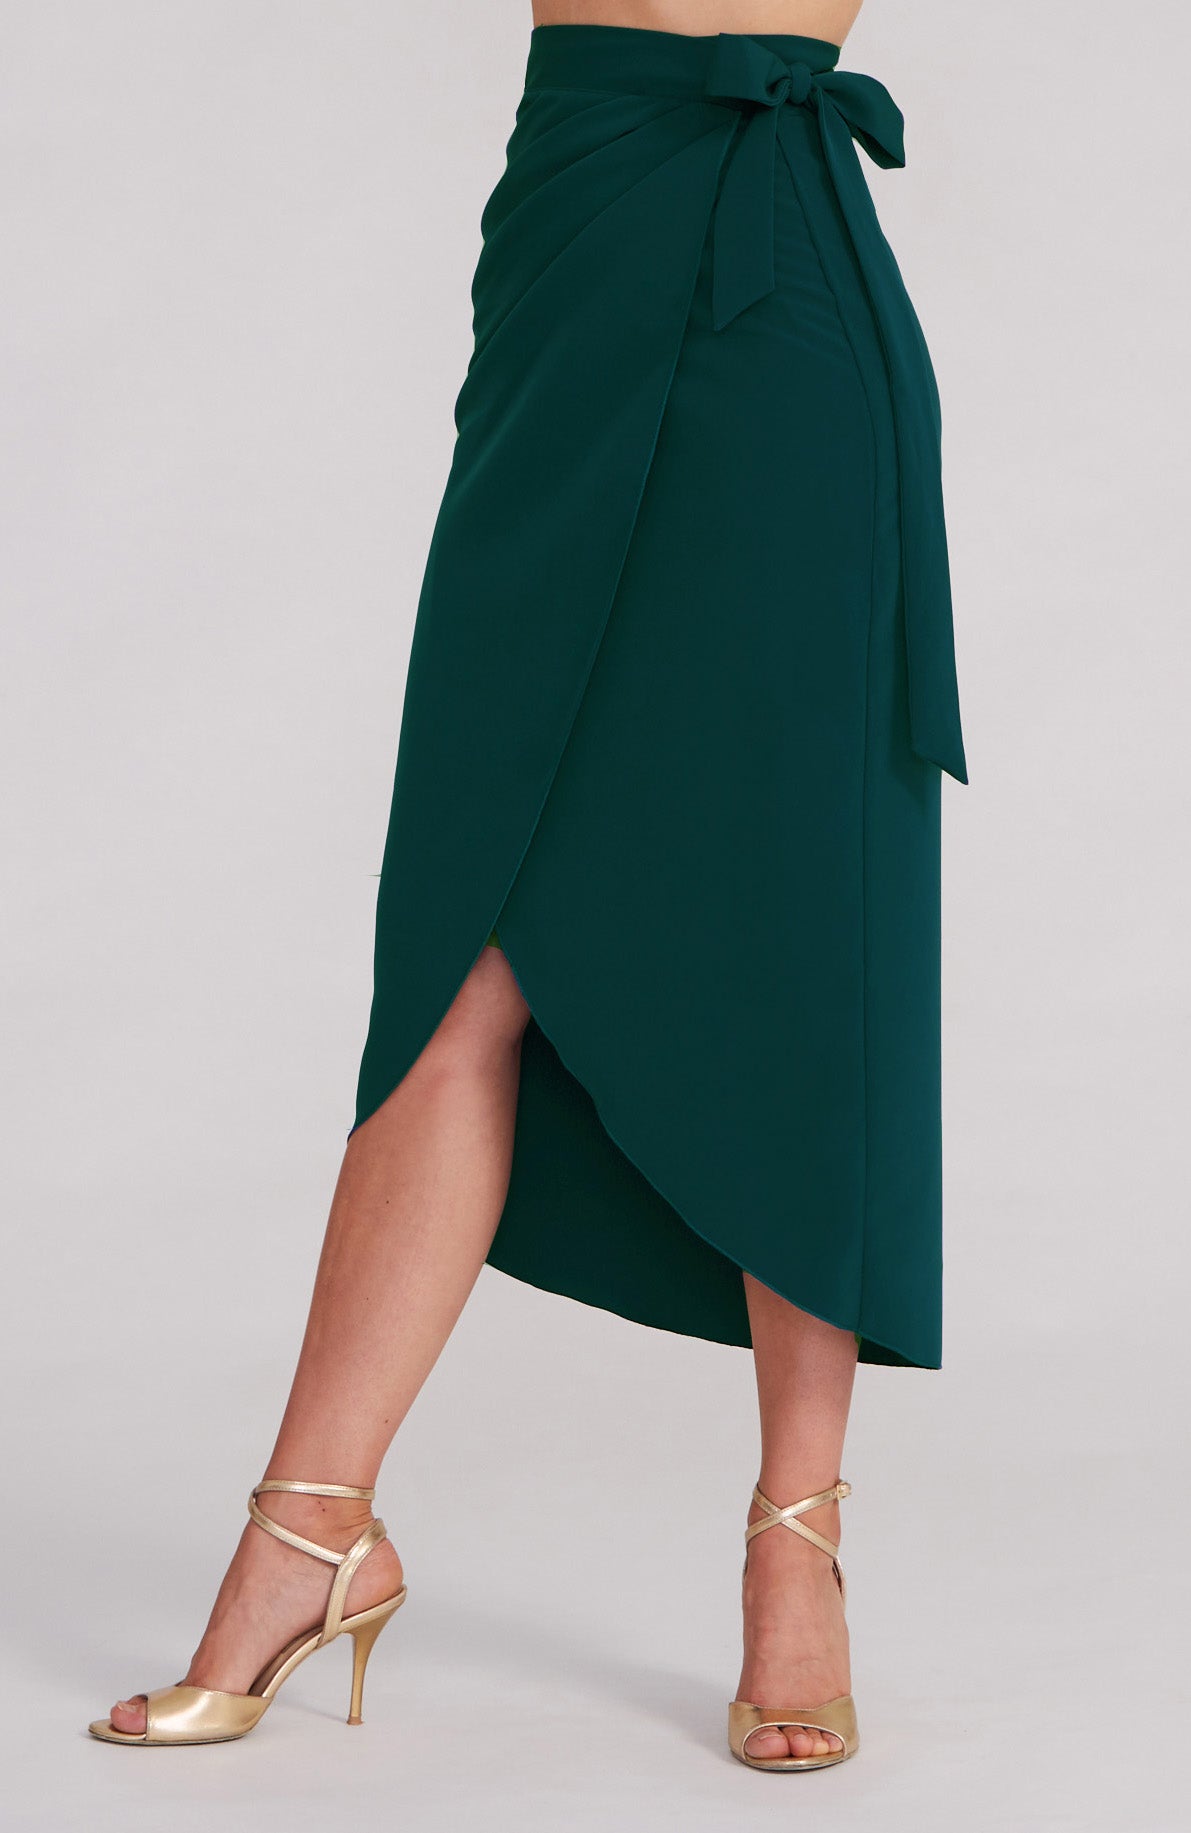 JULIET - Green Wrap Skirt